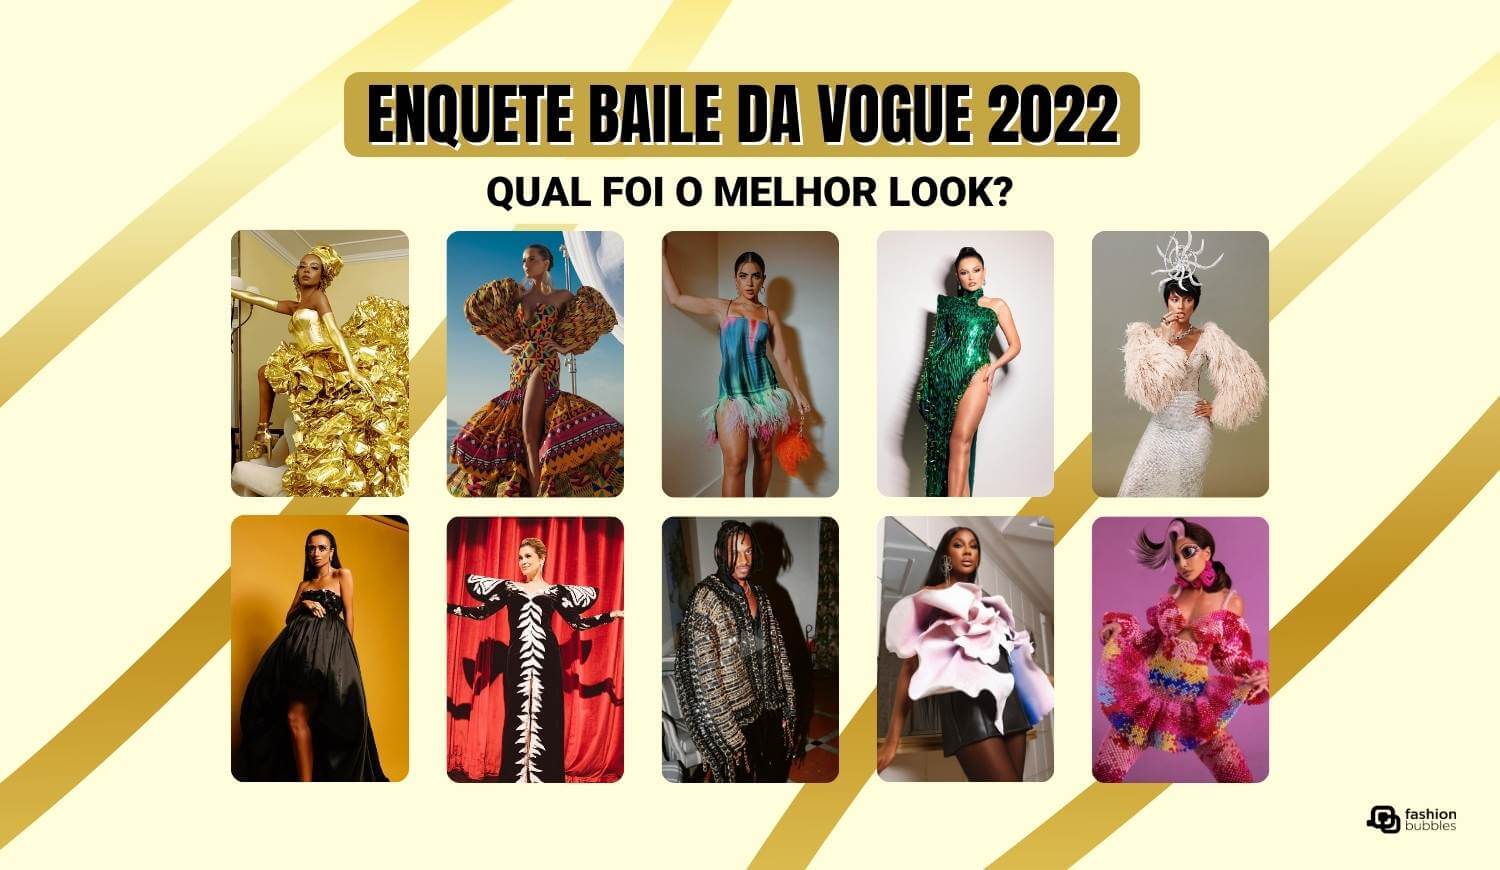 Foto de 10 famosos do Baile da Vogue 2022.